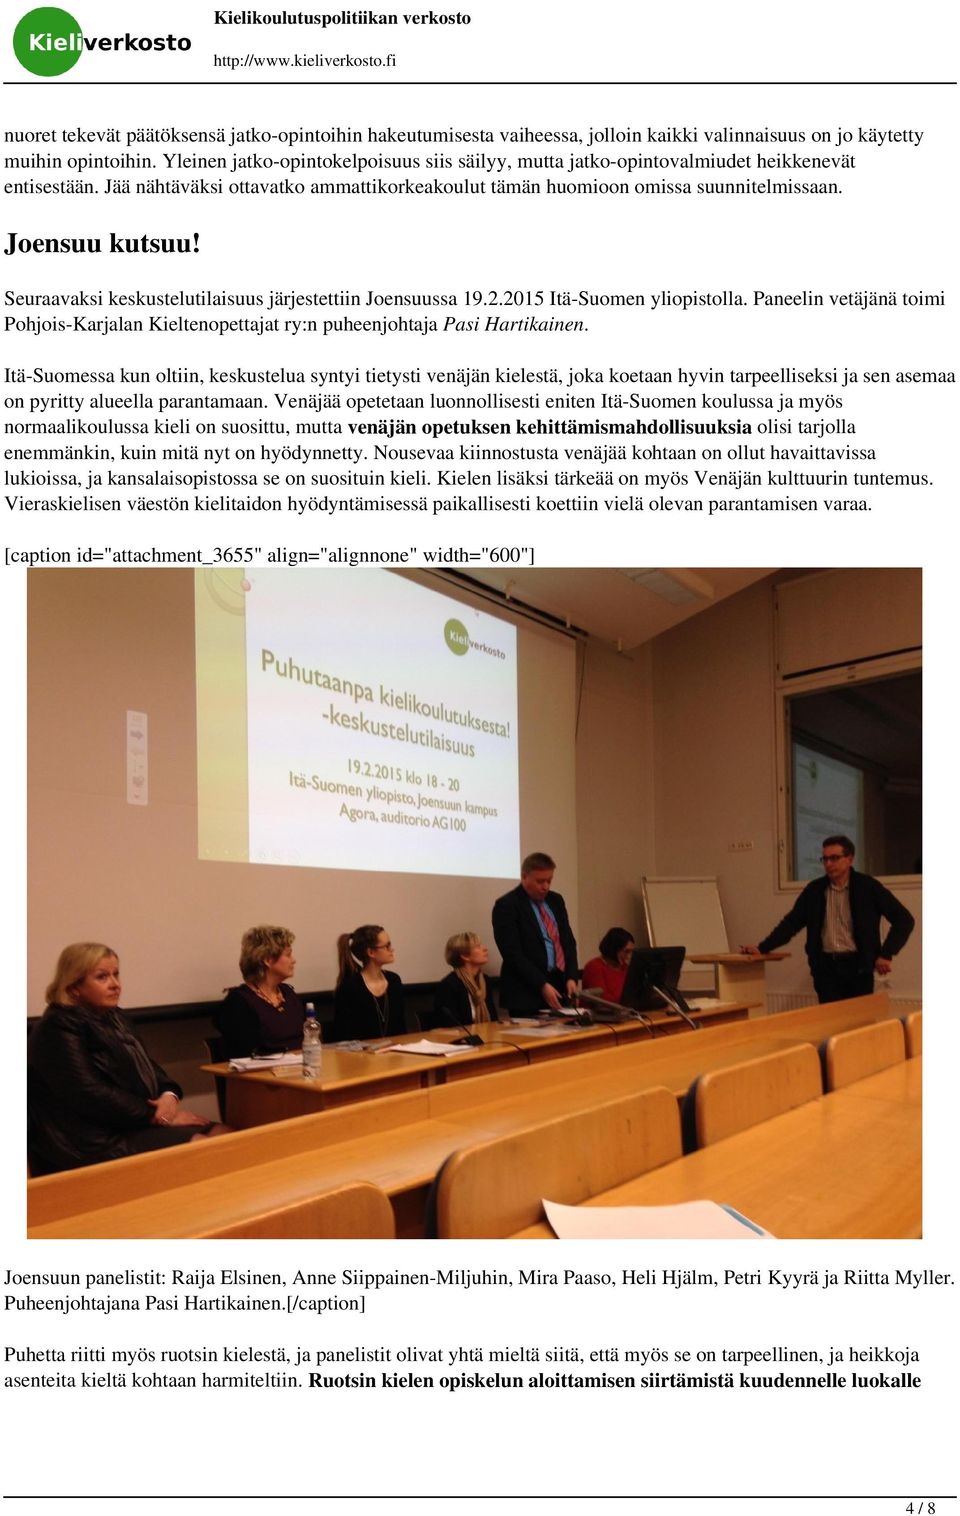 Seuraavaksi keskustelutilaisuus järjestettiin Joensuussa 19.2.2015 Itä-Suomen yliopistolla. Paneelin vetäjänä toimi Pohjois-Karjalan Kieltenopettajat ry:n puheenjohtaja Pasi Hartikainen.